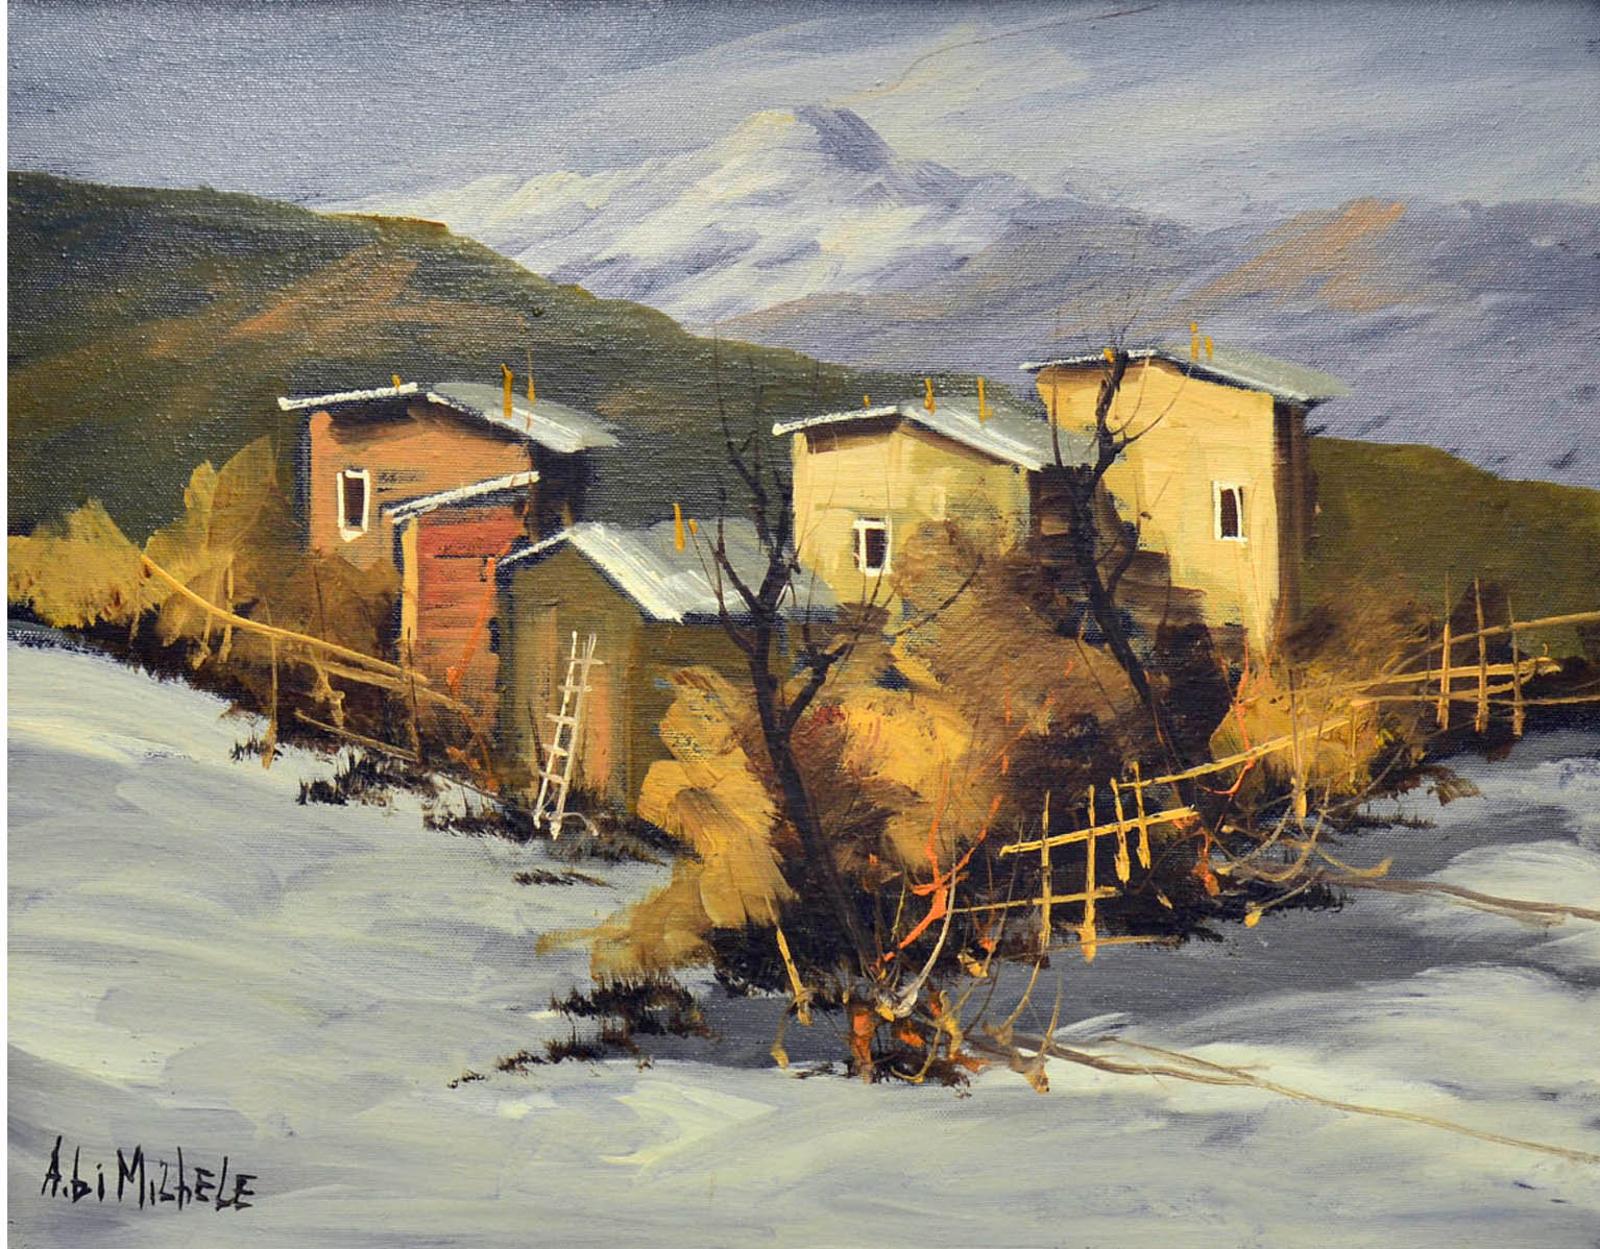 Antonio Di Michele (1953) - A town in winter